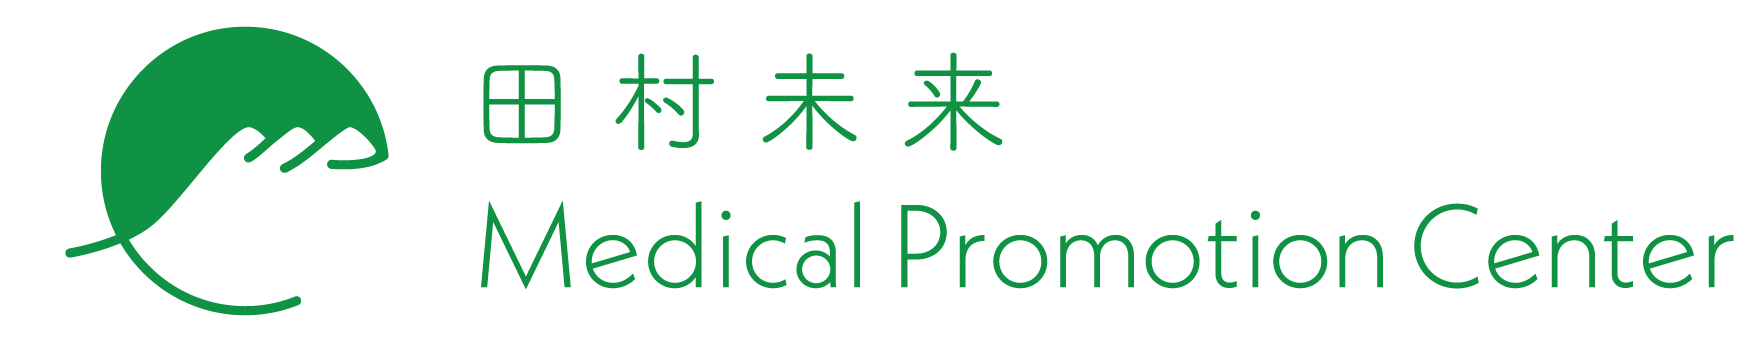 田村未来 Medical Promotion Center